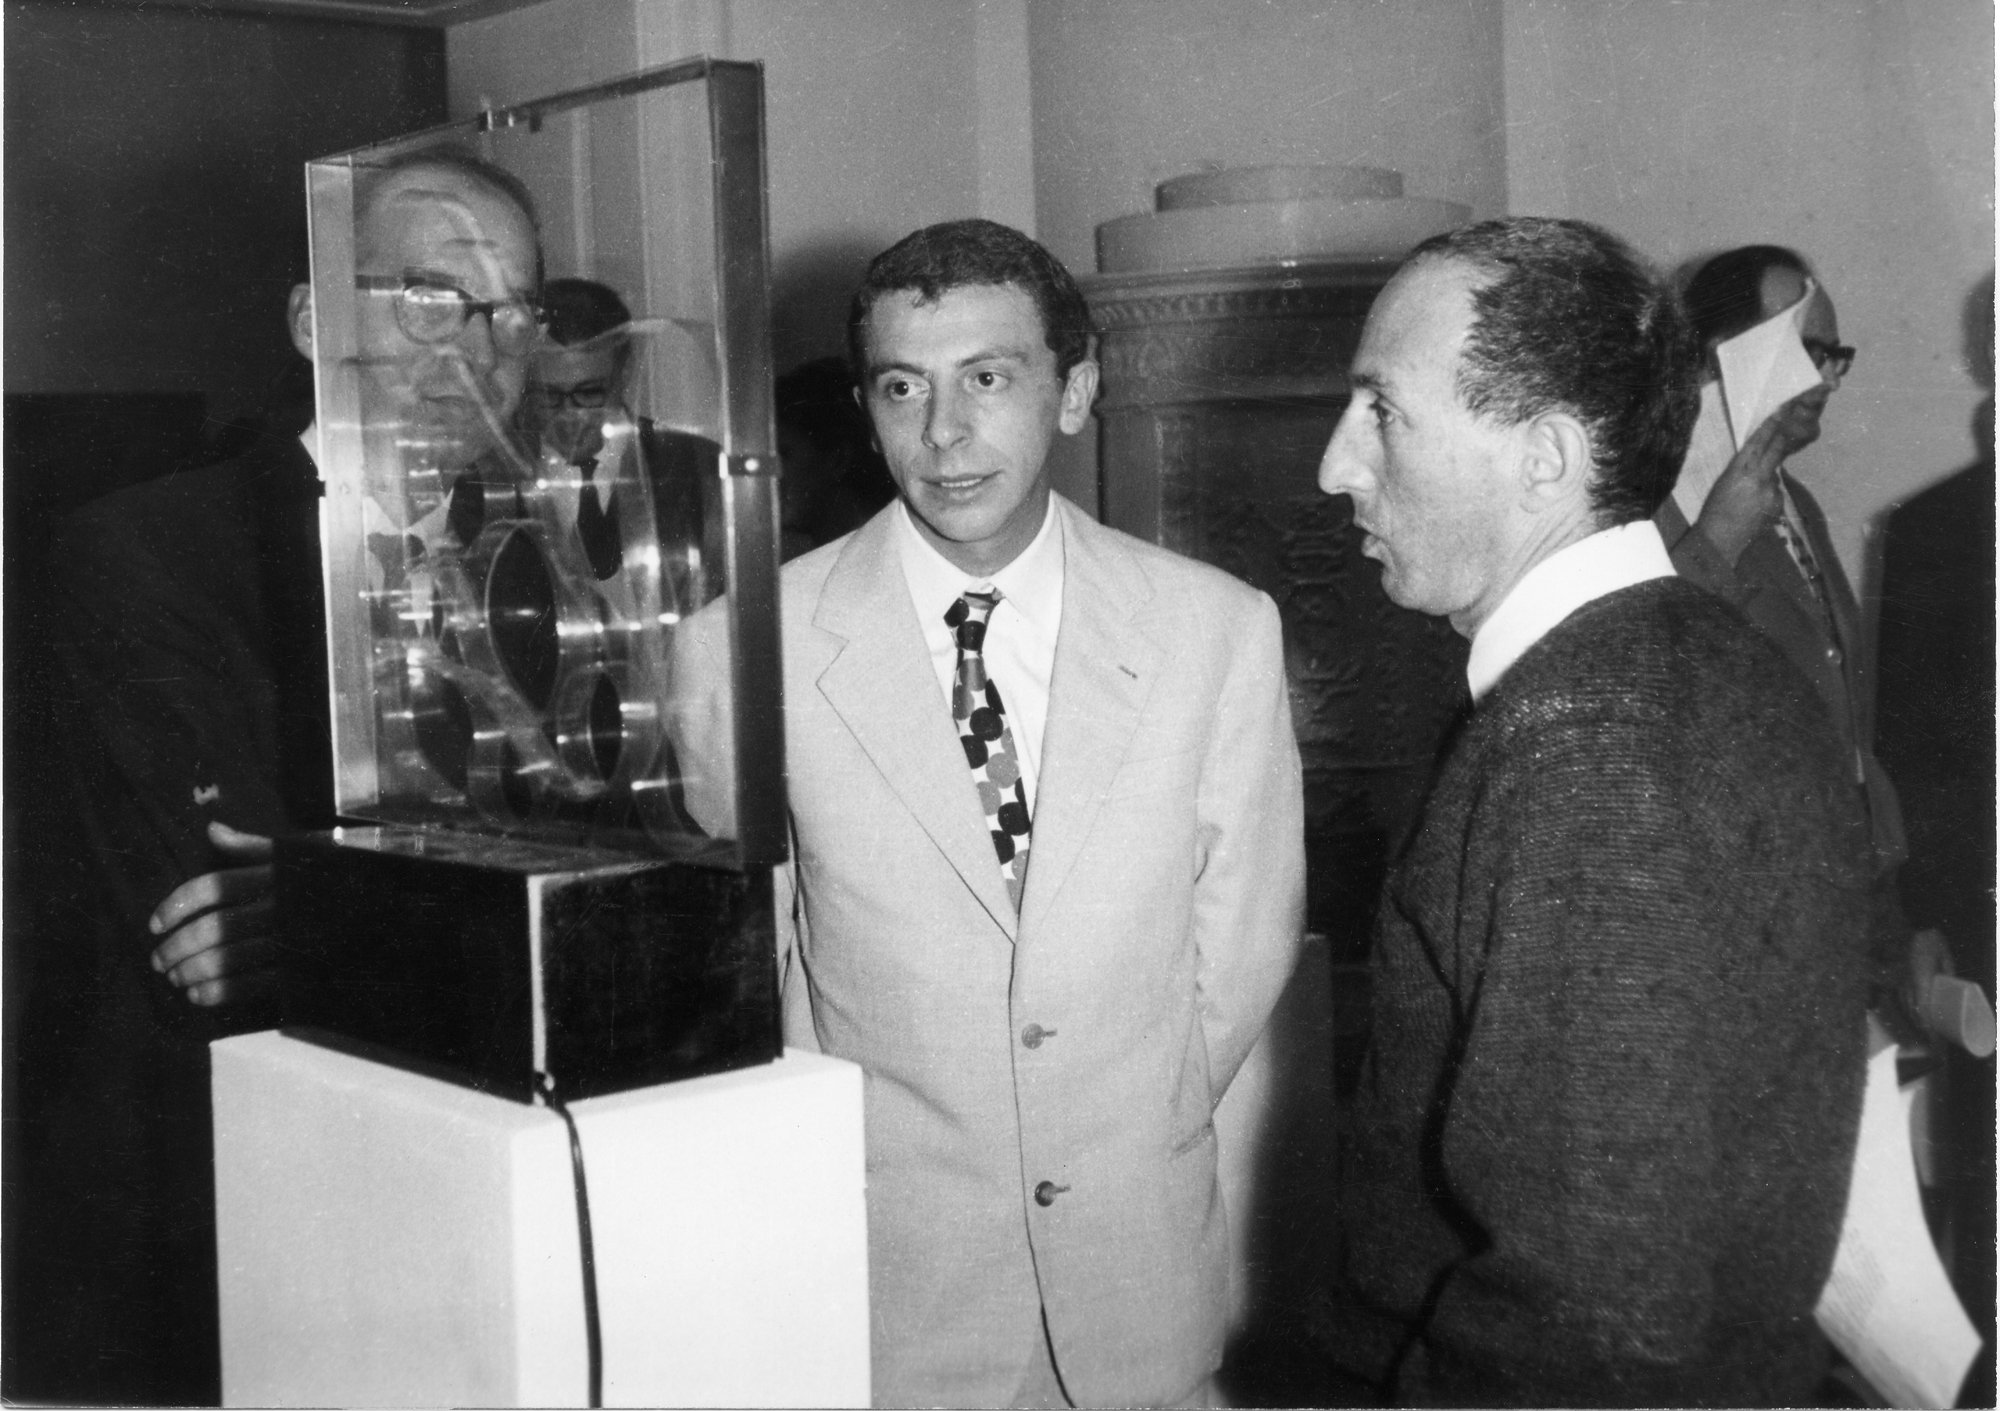 Getulio Alviani and Eugenio Carmi in front of Strutturazione fluida by Gianni Colombo, New Tendencies 2, 1963.